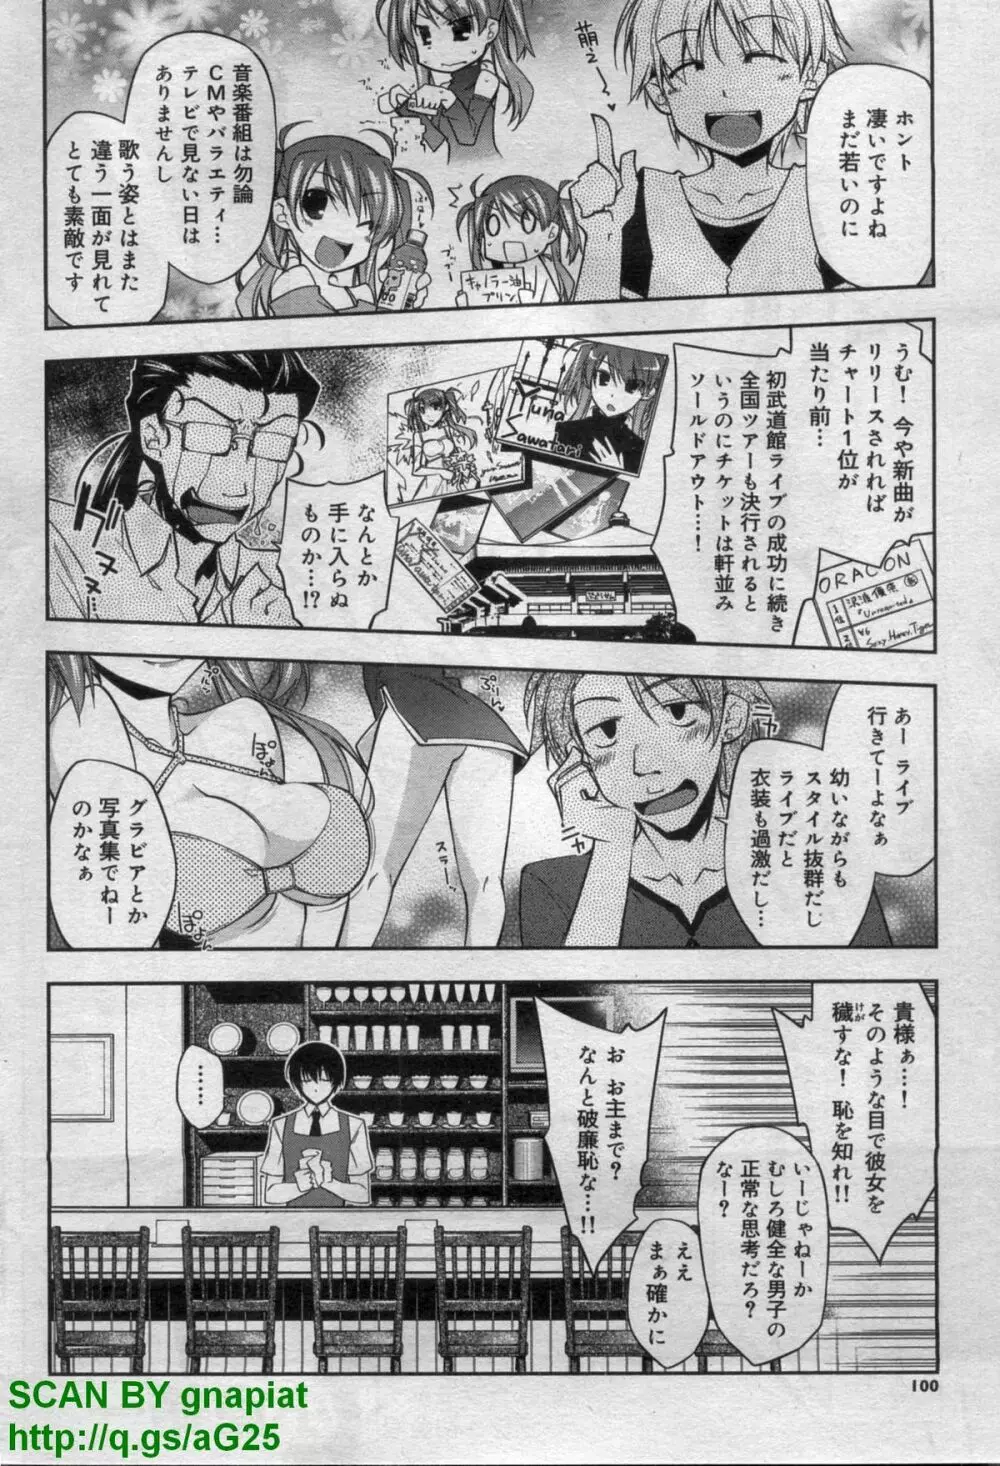 キャノプリcomic 2011年 12月号 Vol.14 102ページ